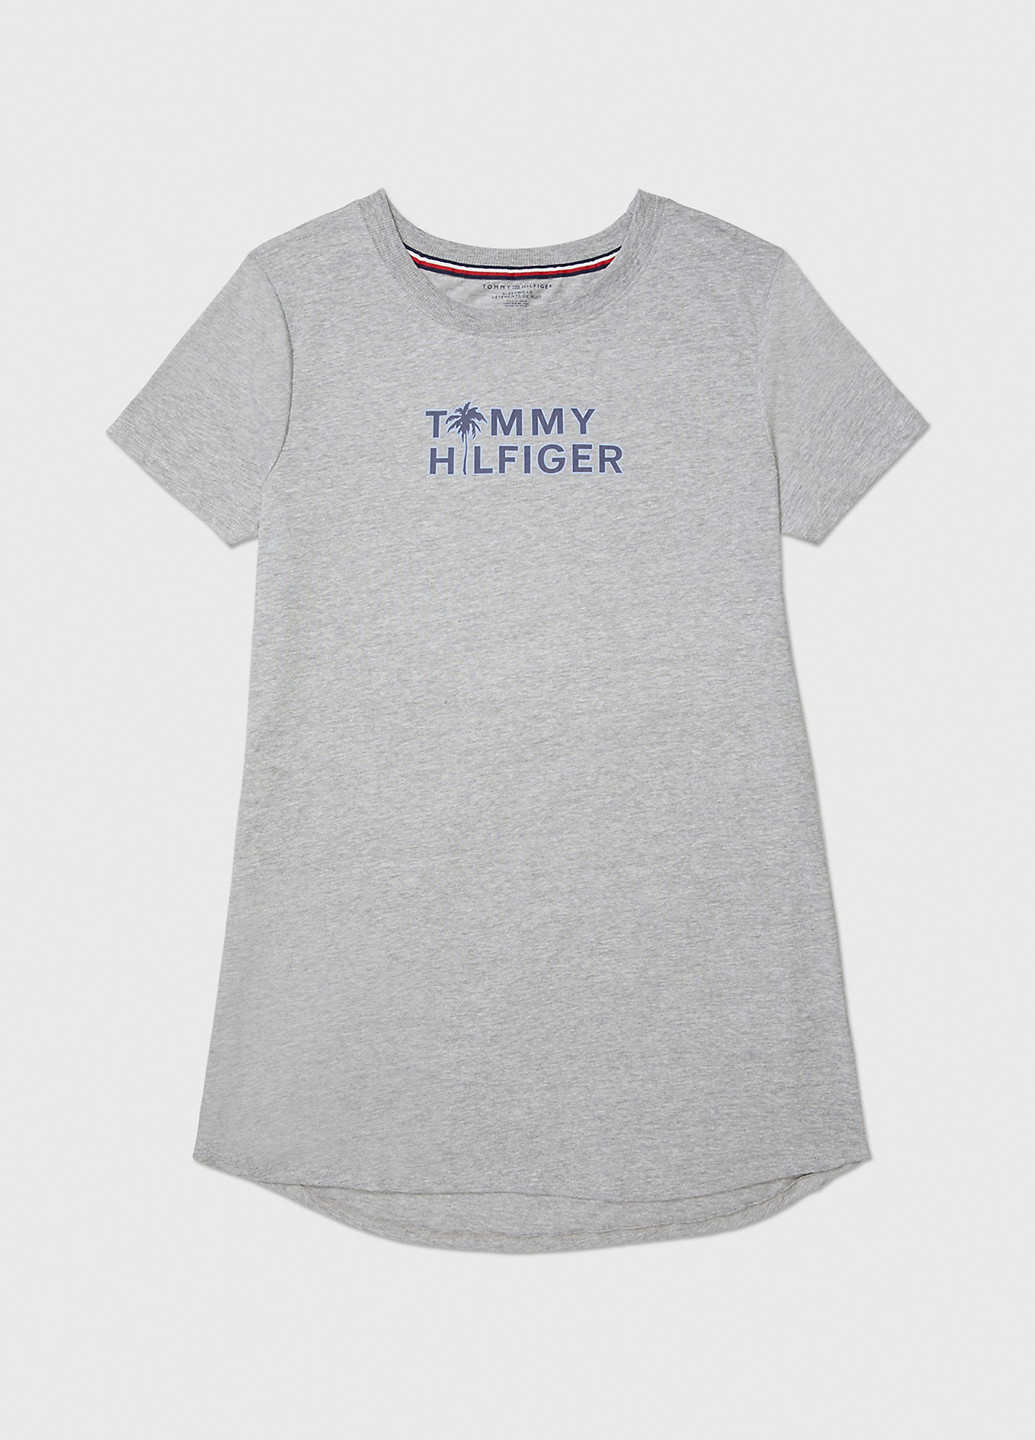 Серое домашнее платье платье-футболка Tommy Hilfiger с надписью